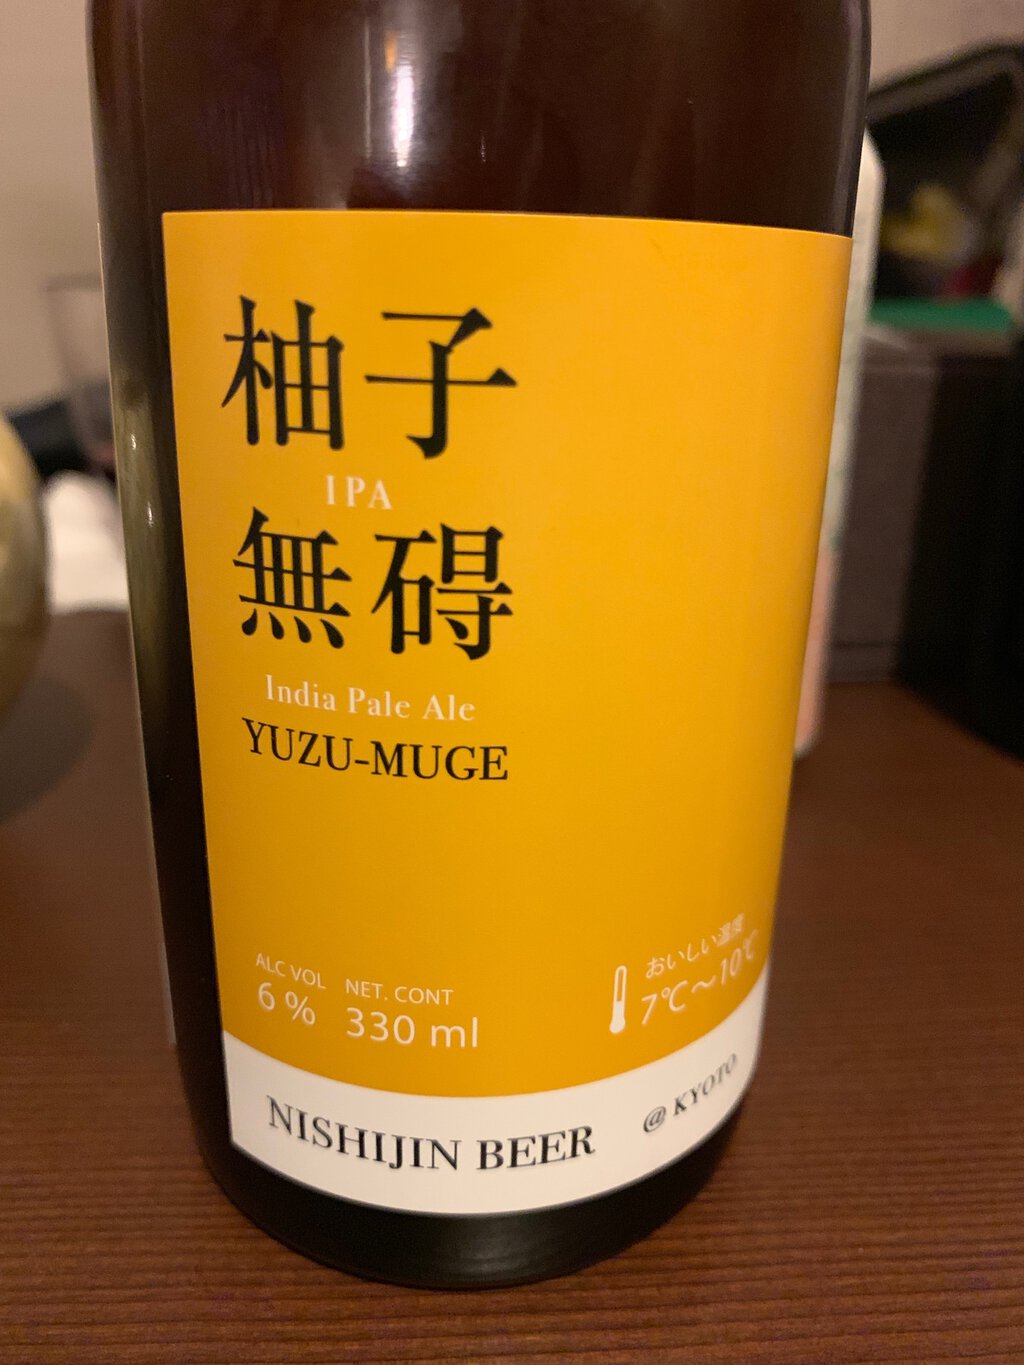 Yugu-muze beer